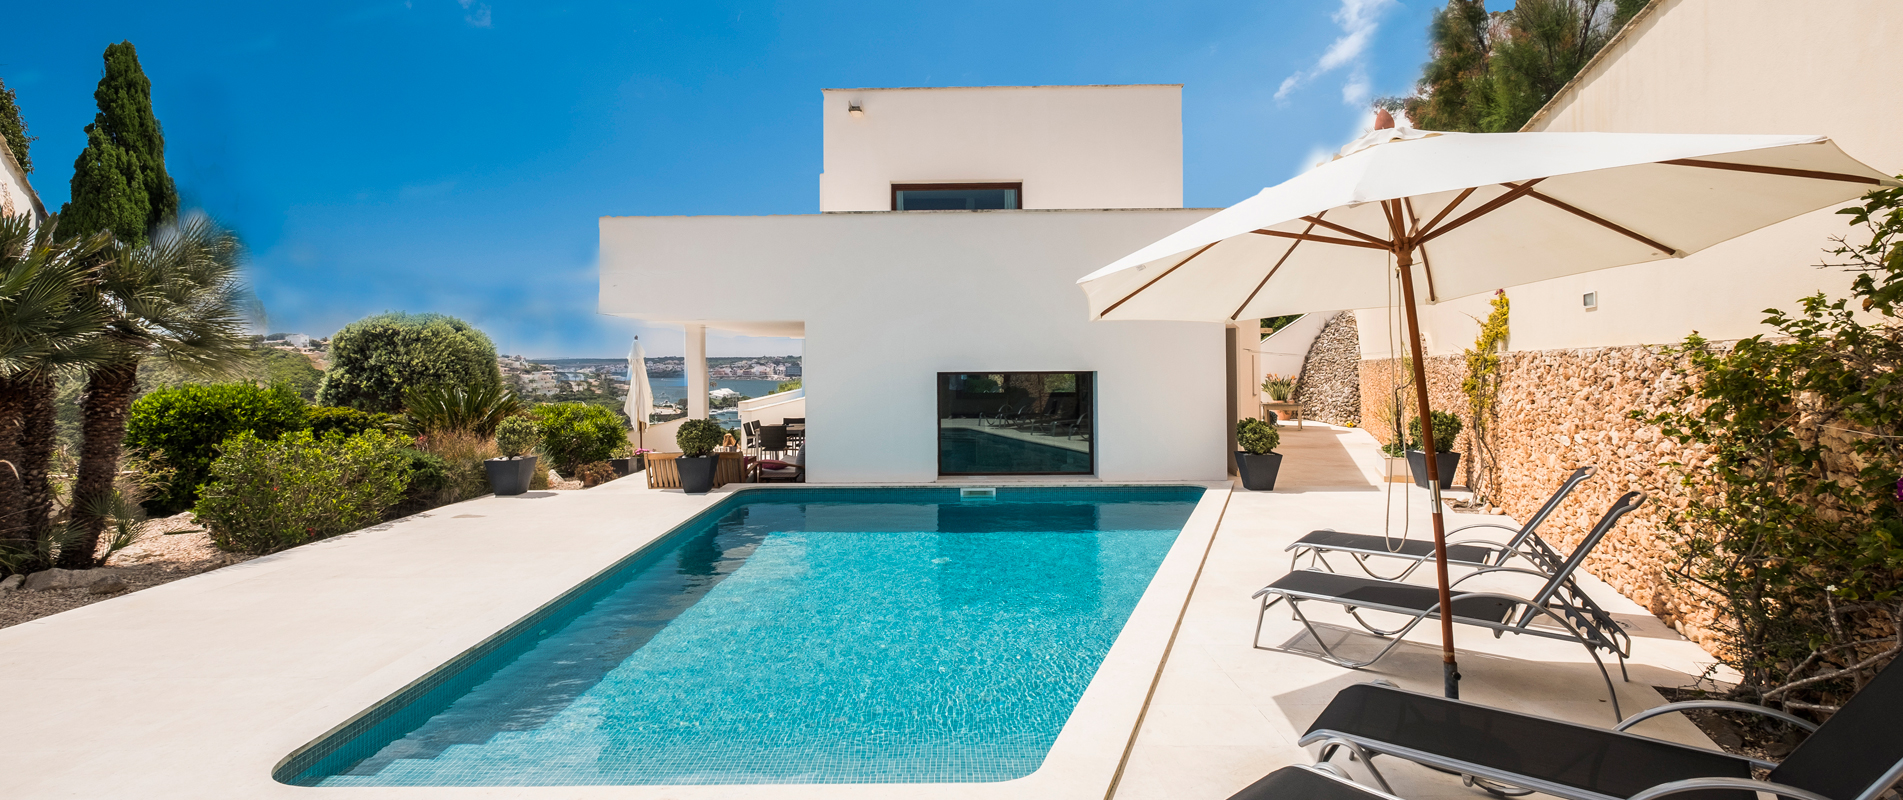 Villa holidays 2020 in Menorca